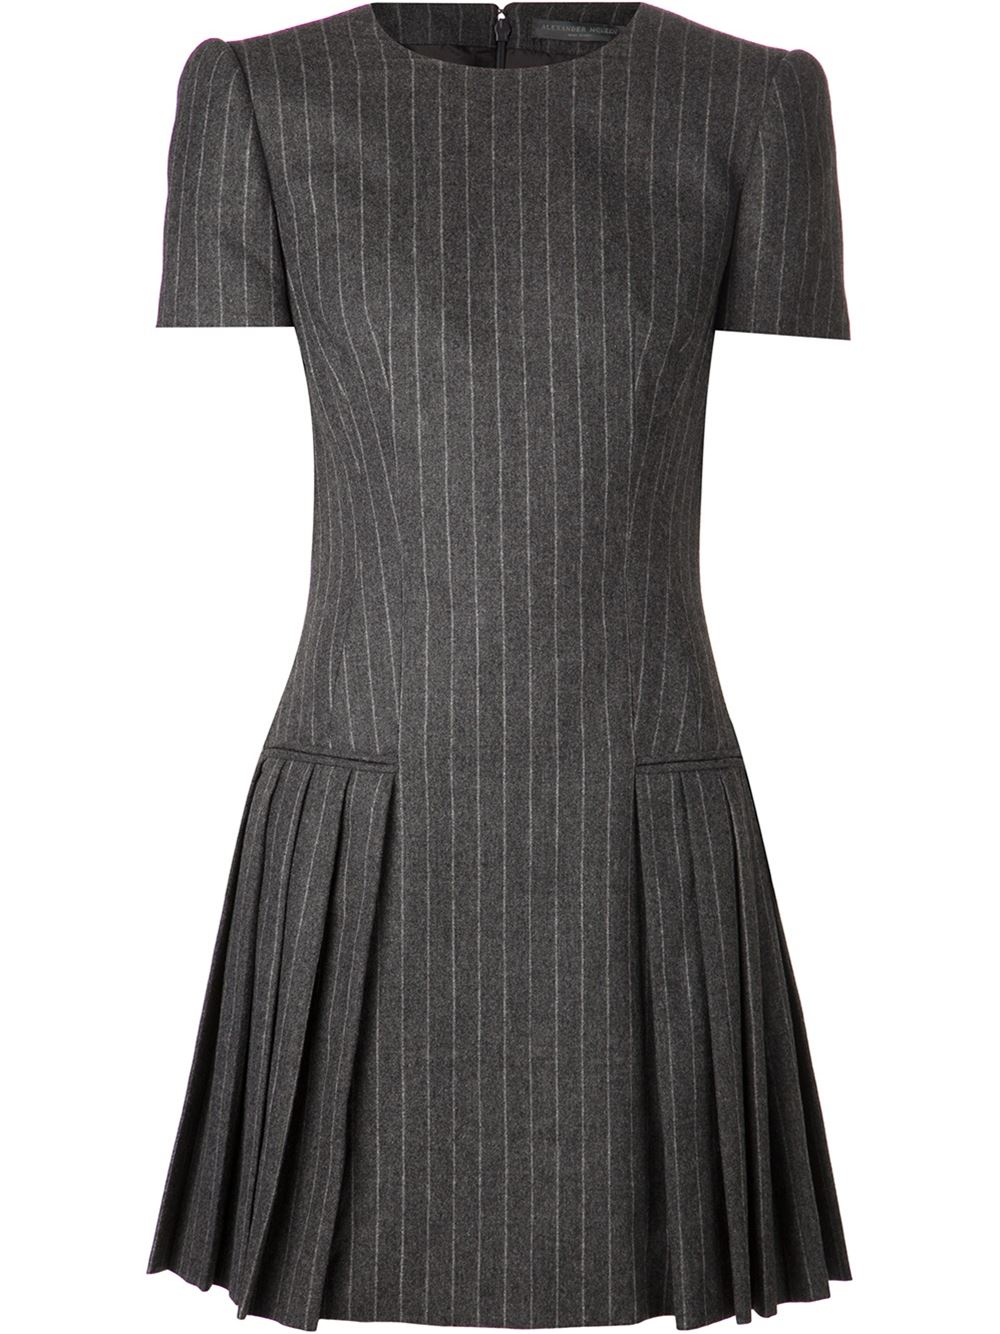 Alexander McQueen Pinstripe Pleated Dress in Grey (Gray) - Lyst